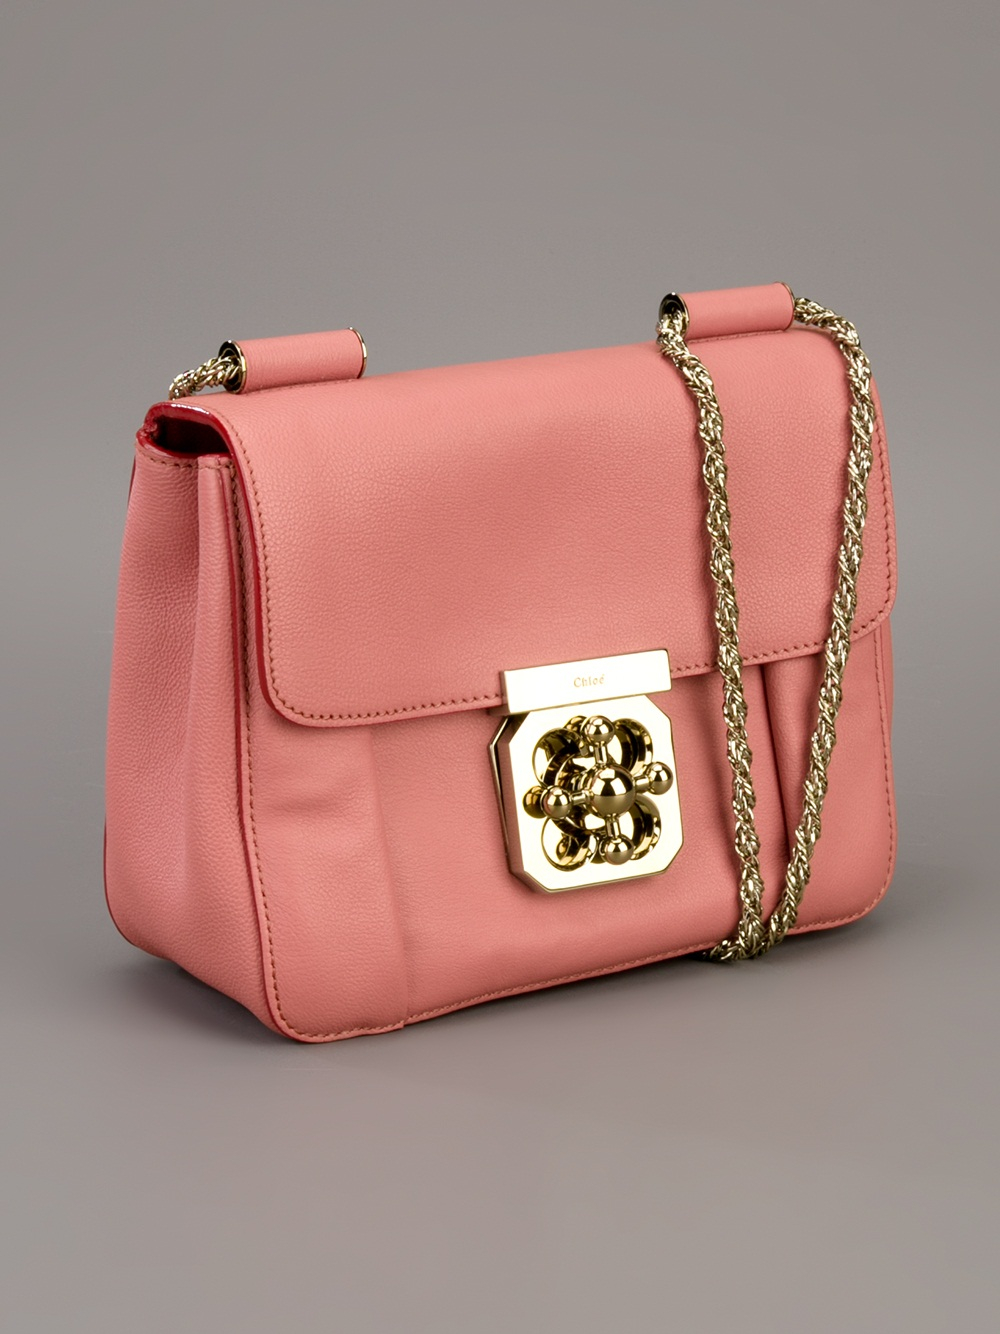 Lyst - Chloé Elsie Bag in Pink